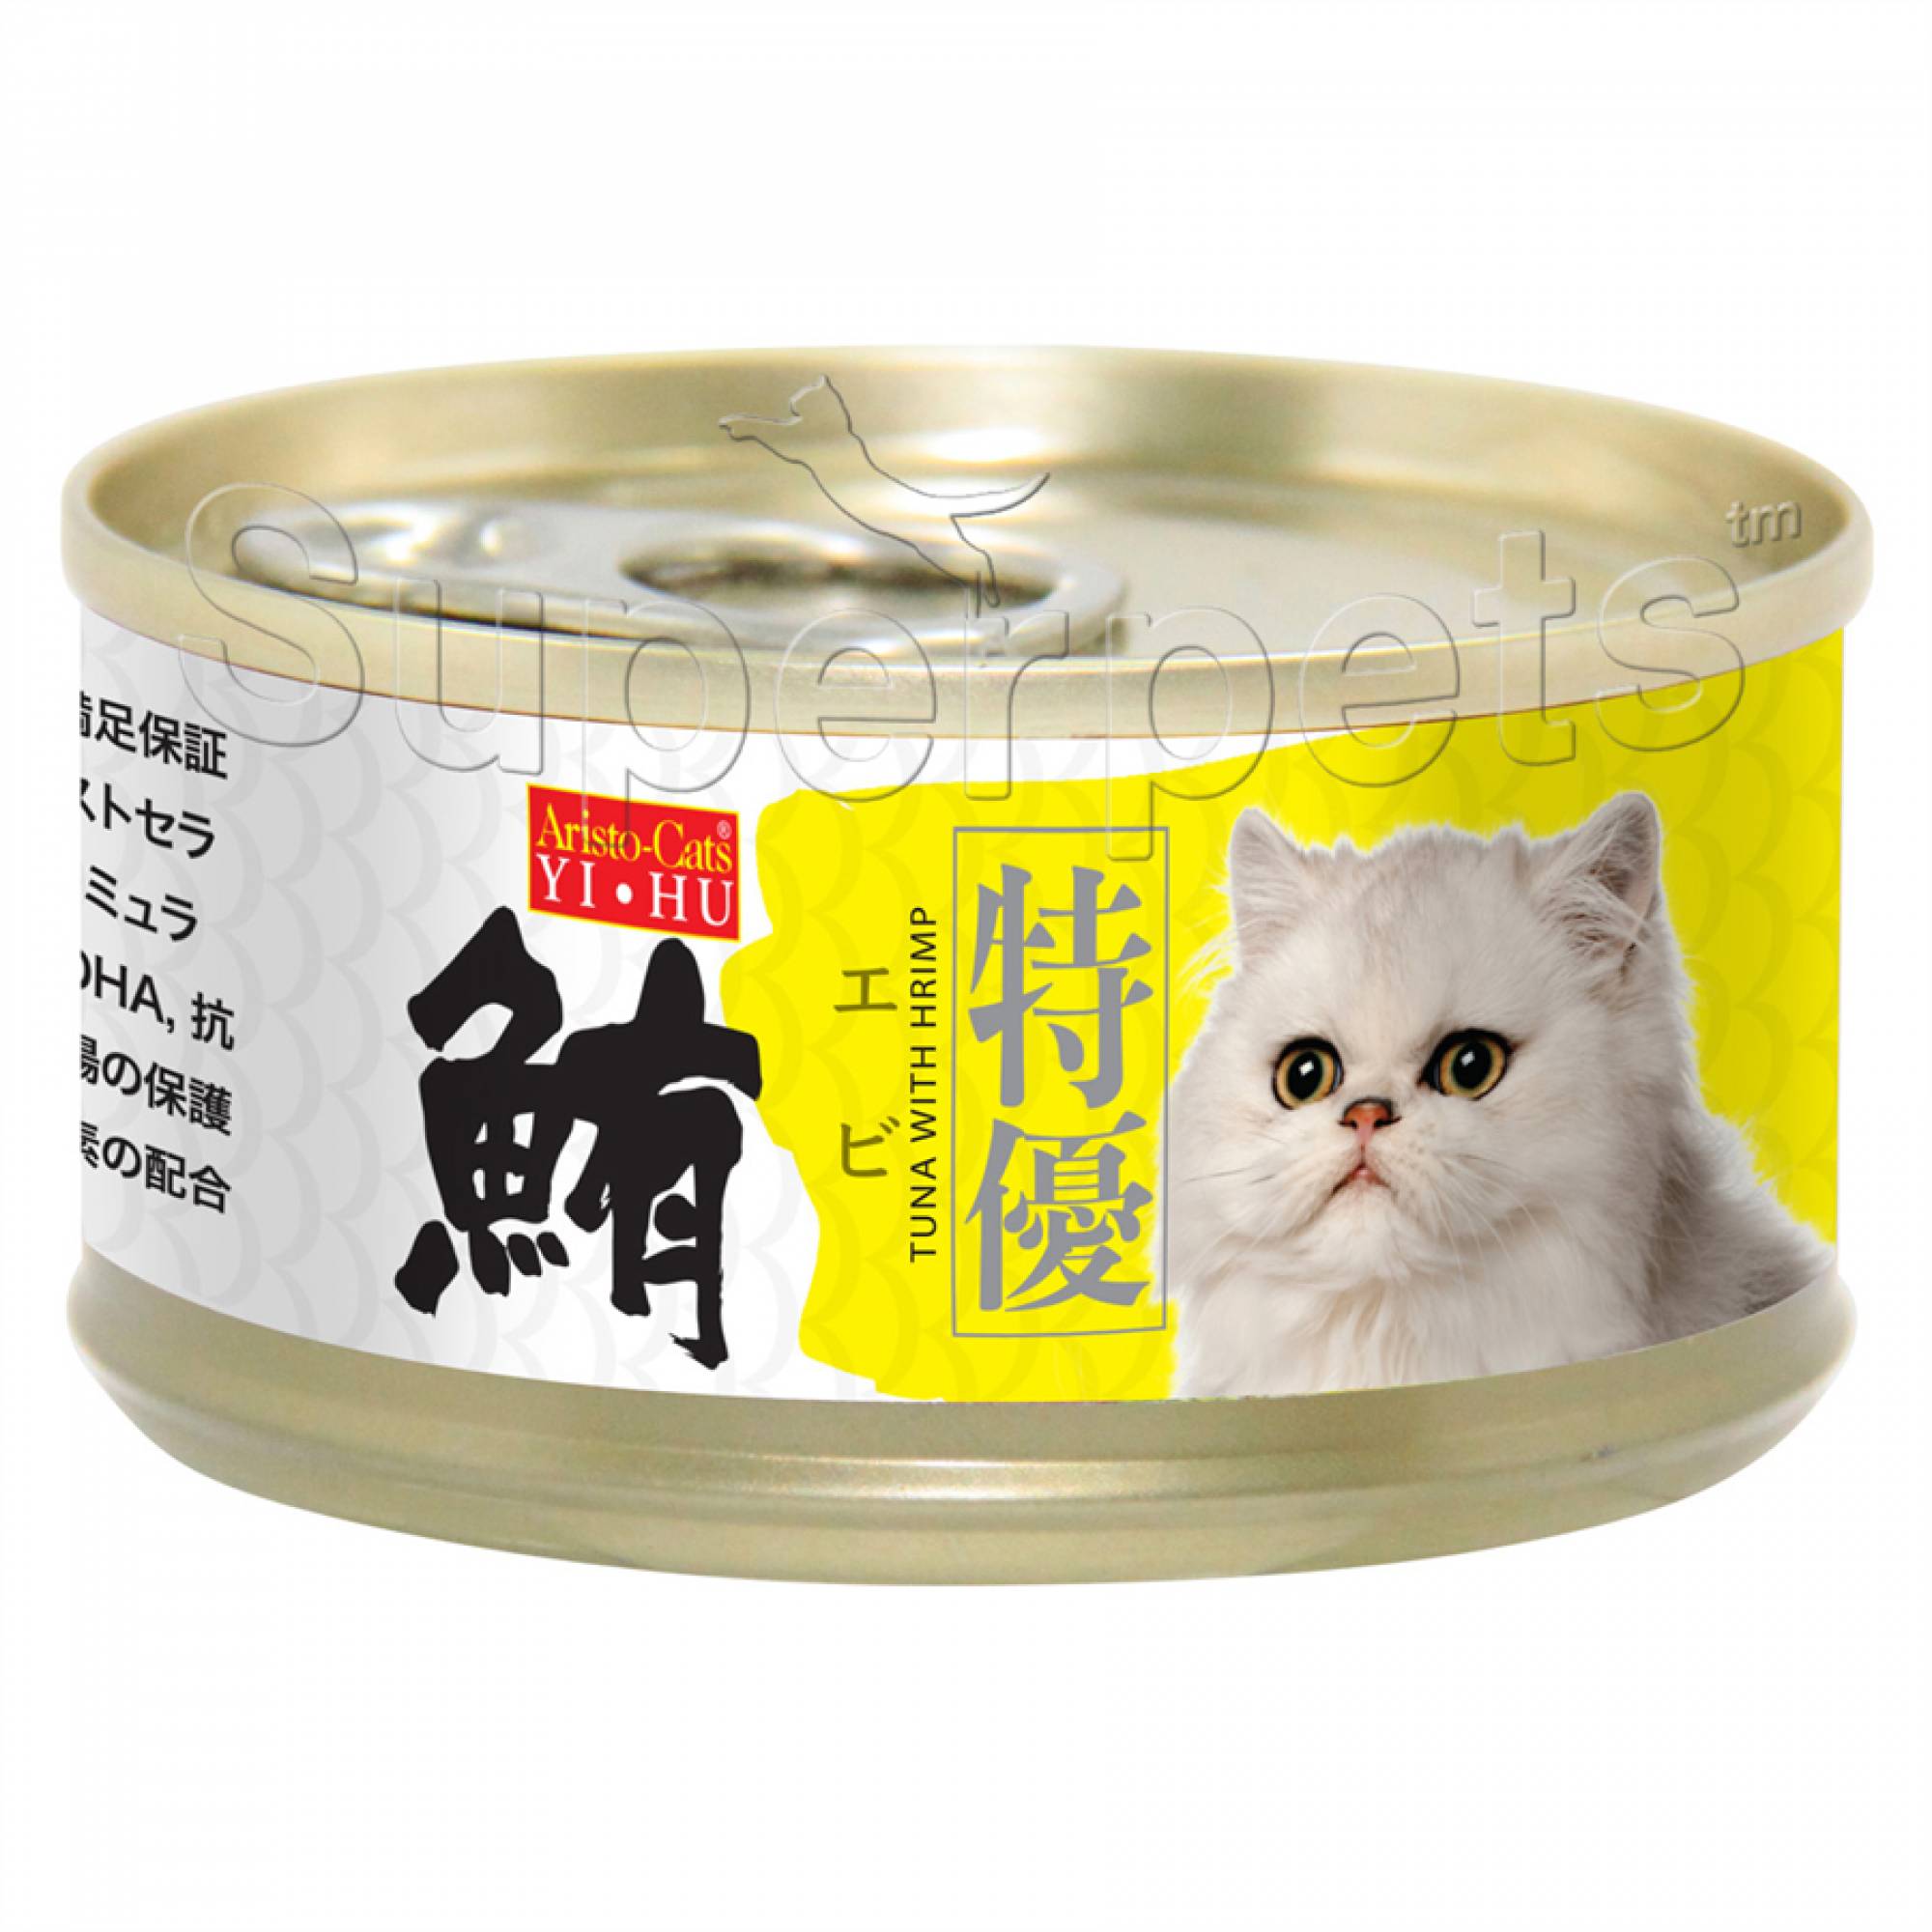 Aristo-Cats - Premium Plus (Export) - Tuna with Shrimp 80g